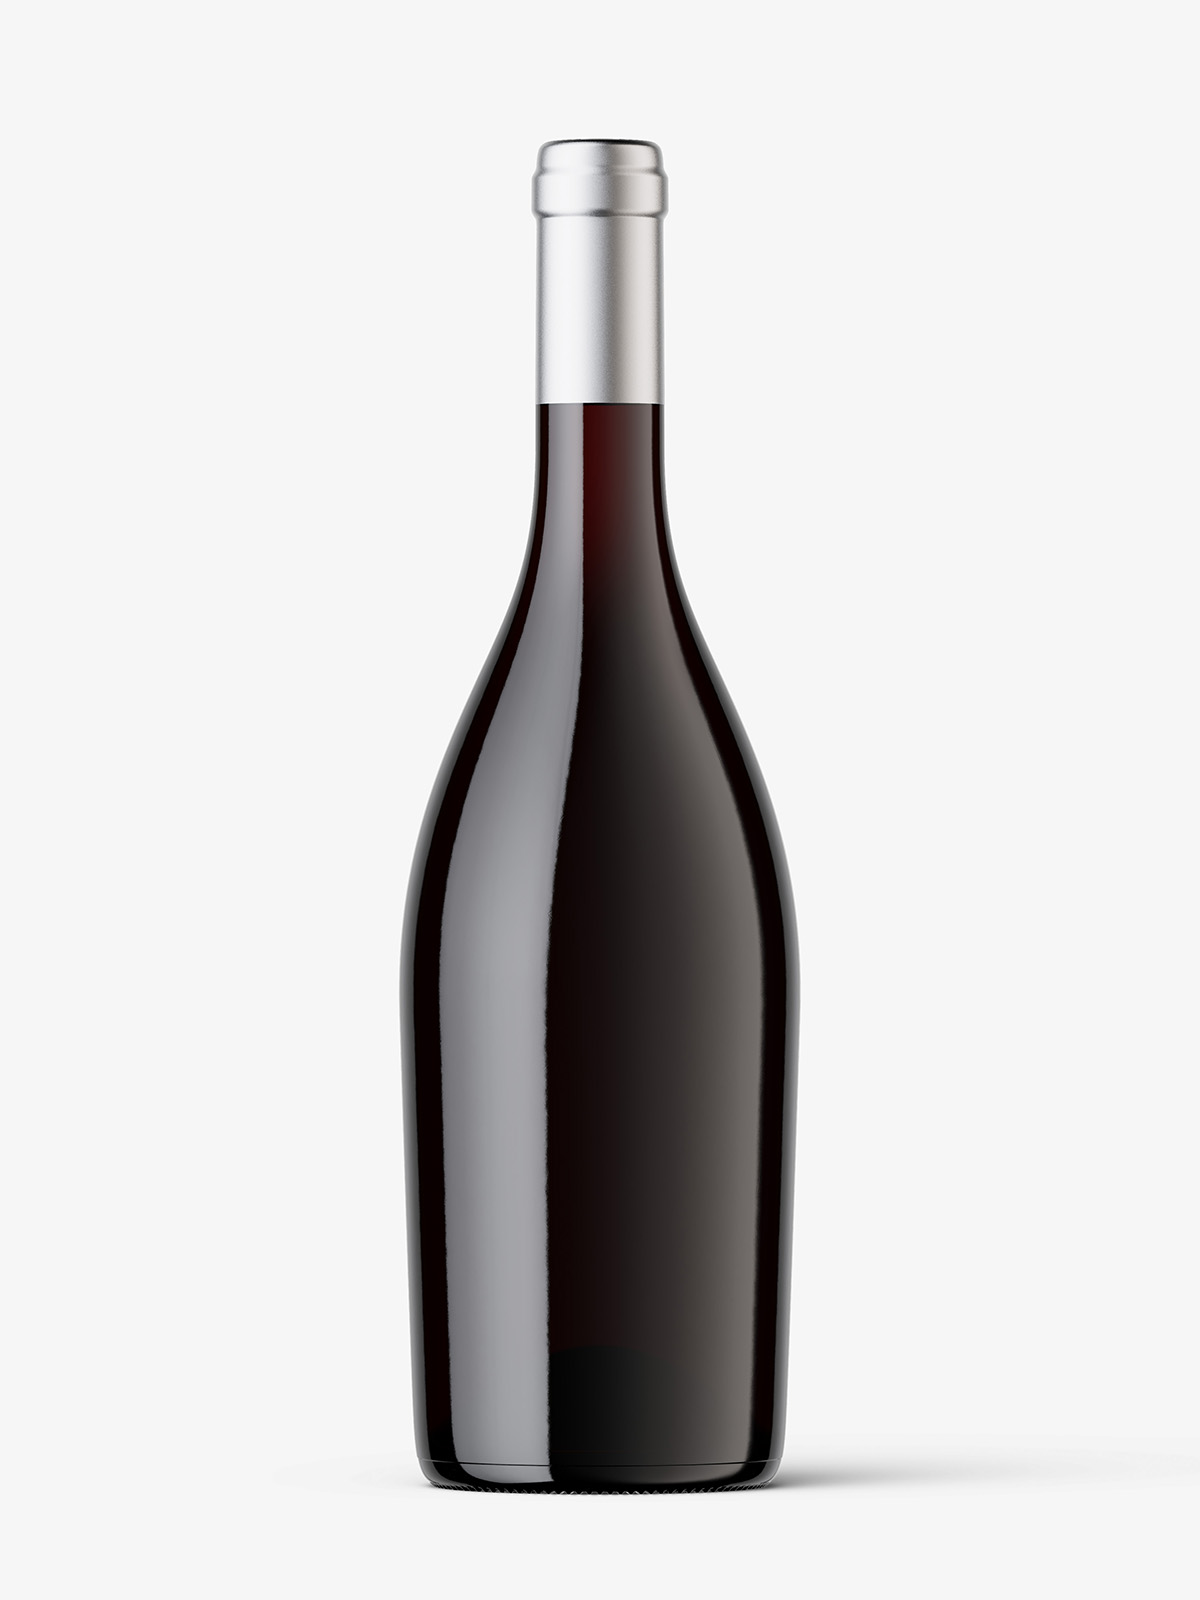 Download PSD Mockups Mockup Bottle Of Wine Potoshop - Free PSD ...